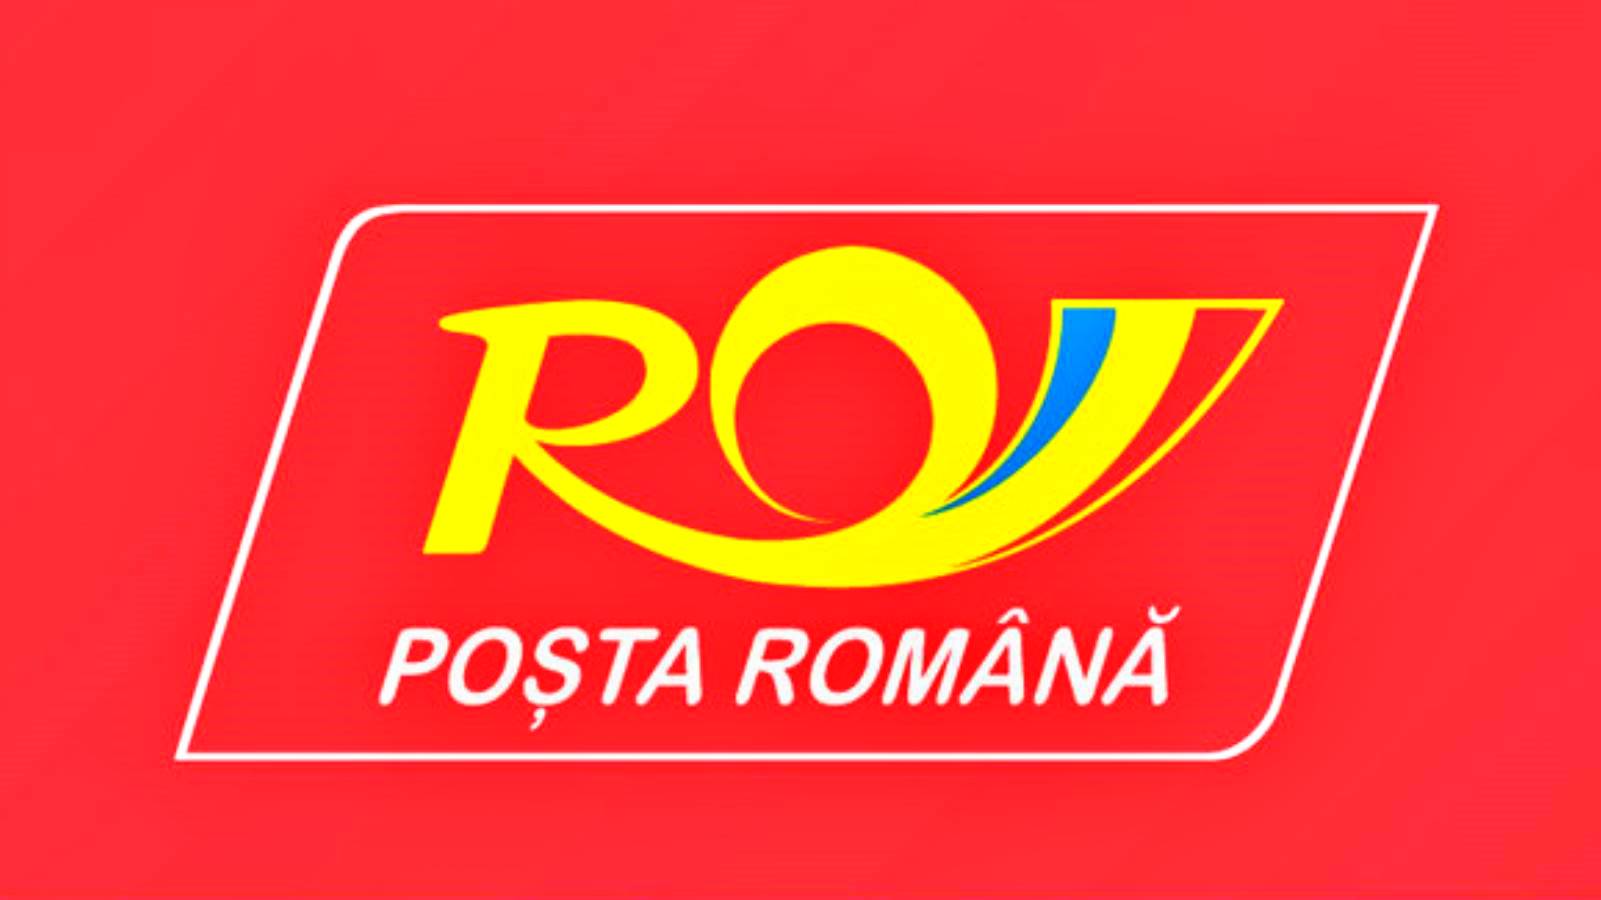 Anuncio del Correo Rumano, cuya decisión se aplica a toda Rumania